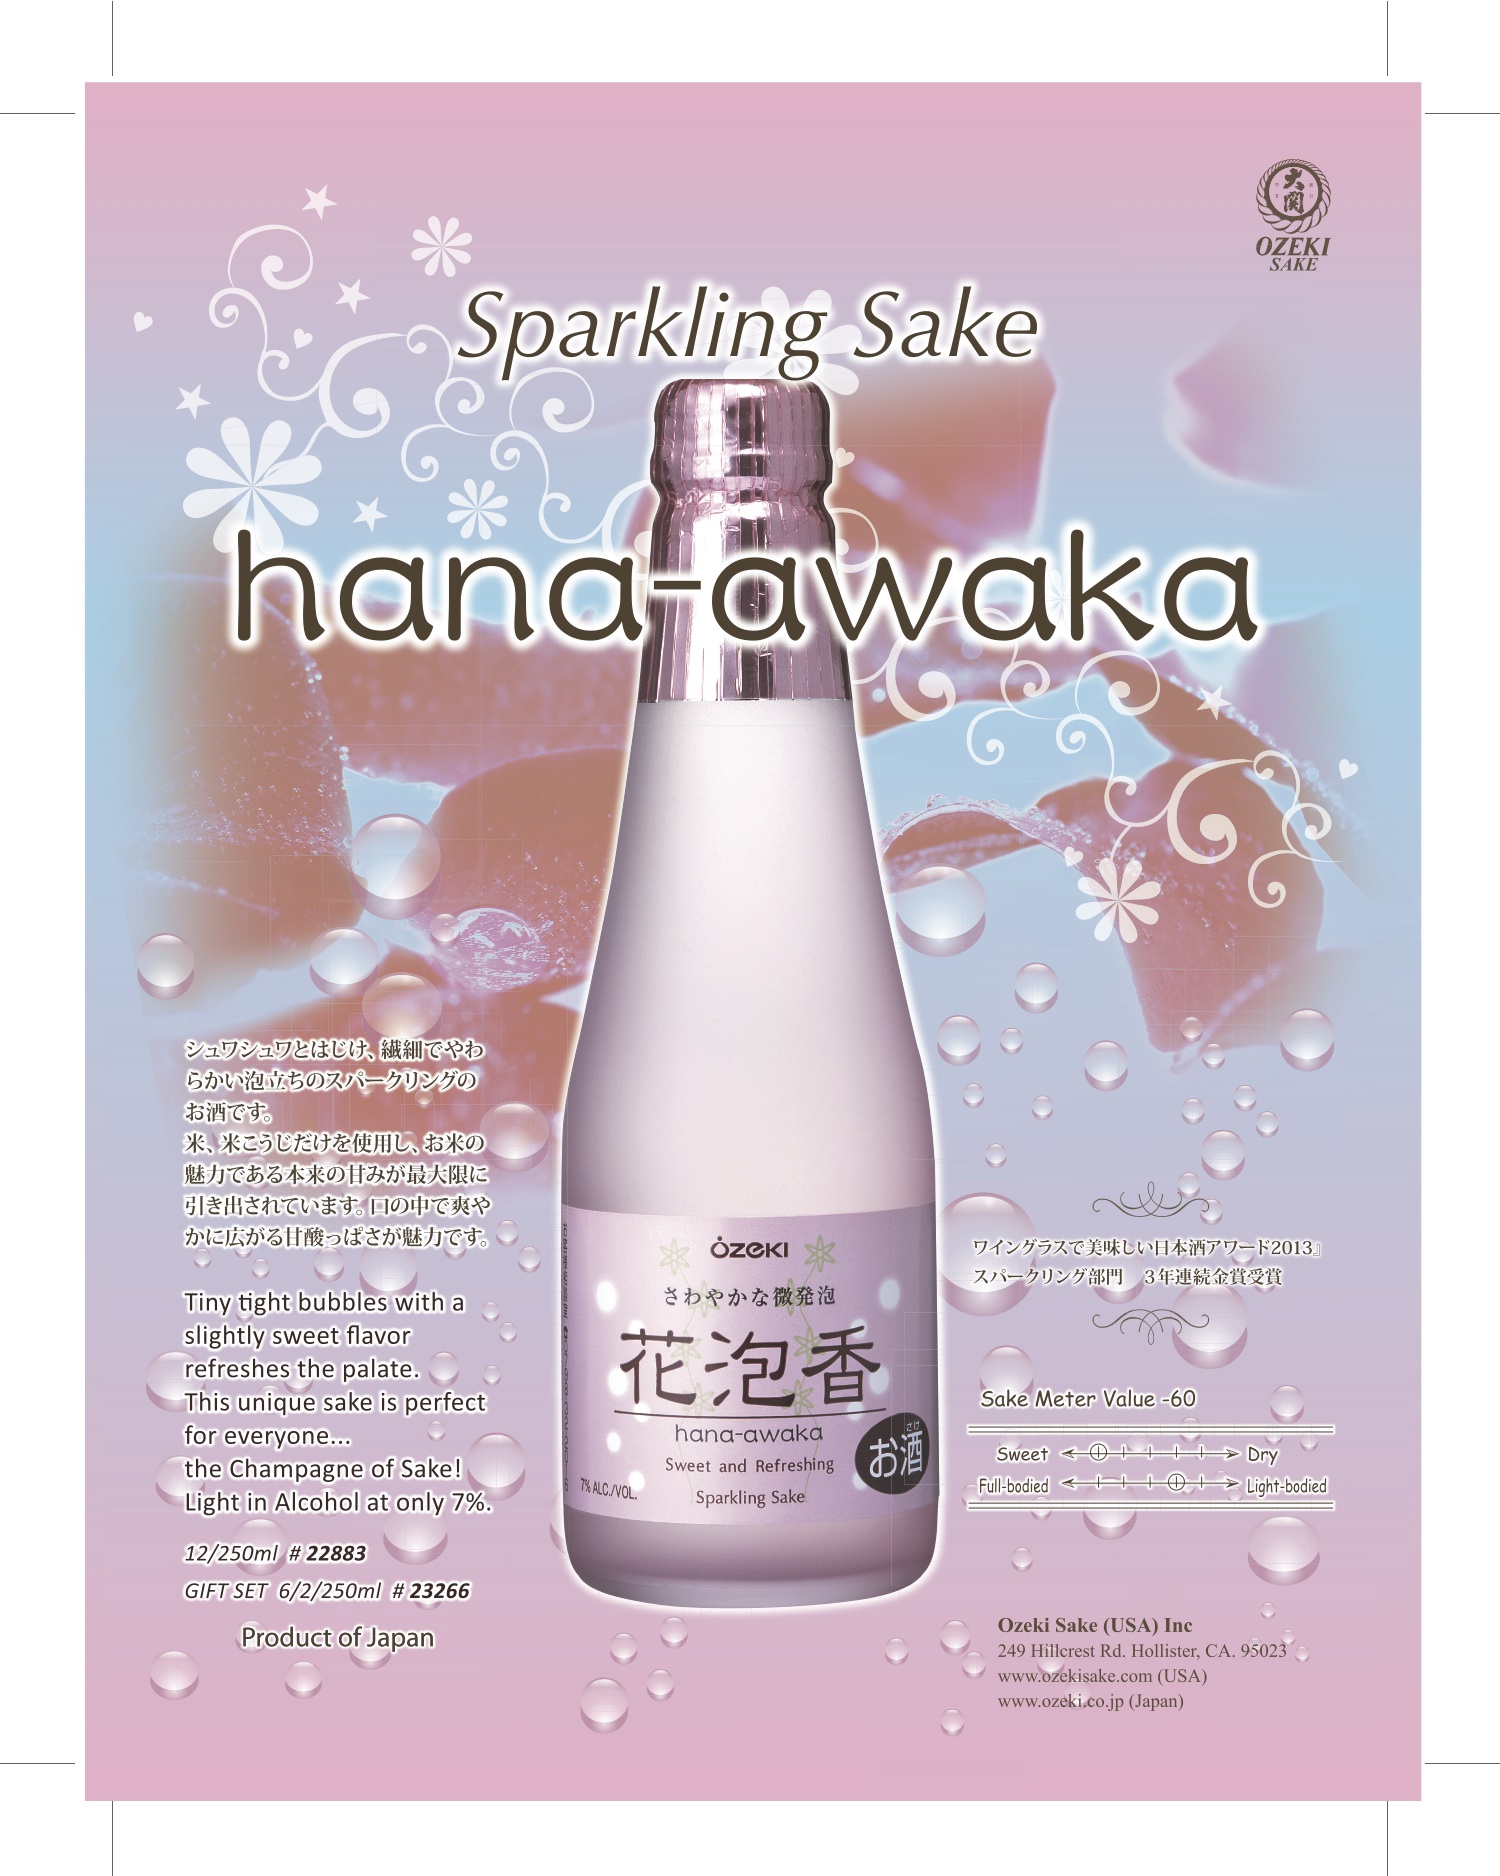 Hana-awaka sake